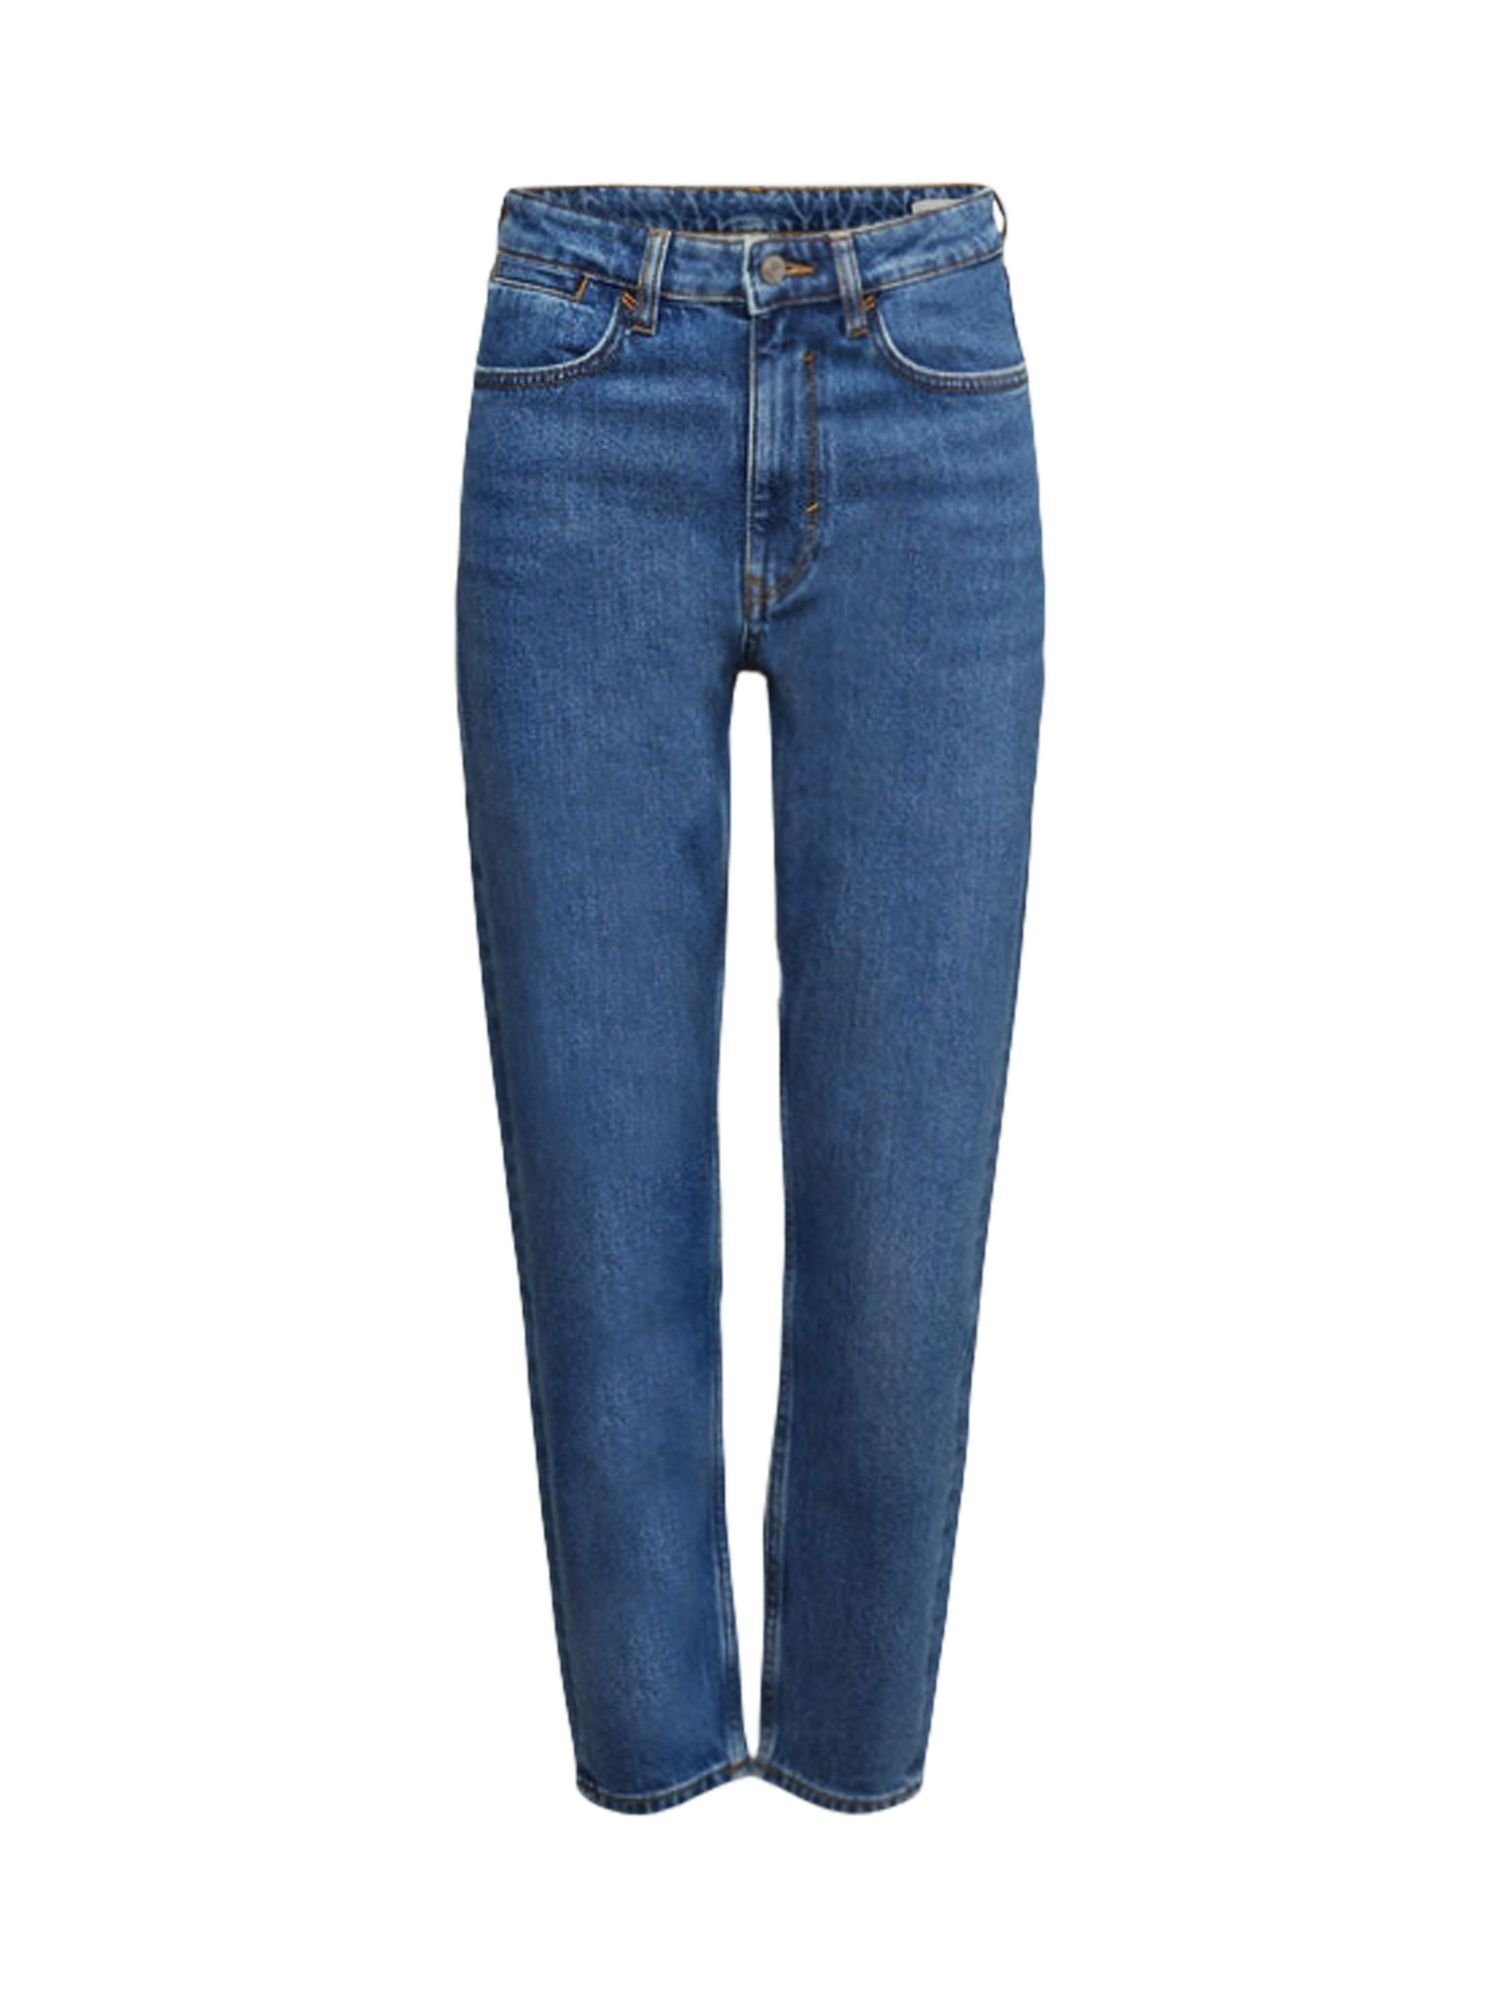 Esprit 7/8-Jeans Jeans mit hohem Bund und geradem Beinverlauf BLUE MEDIUM WASHED